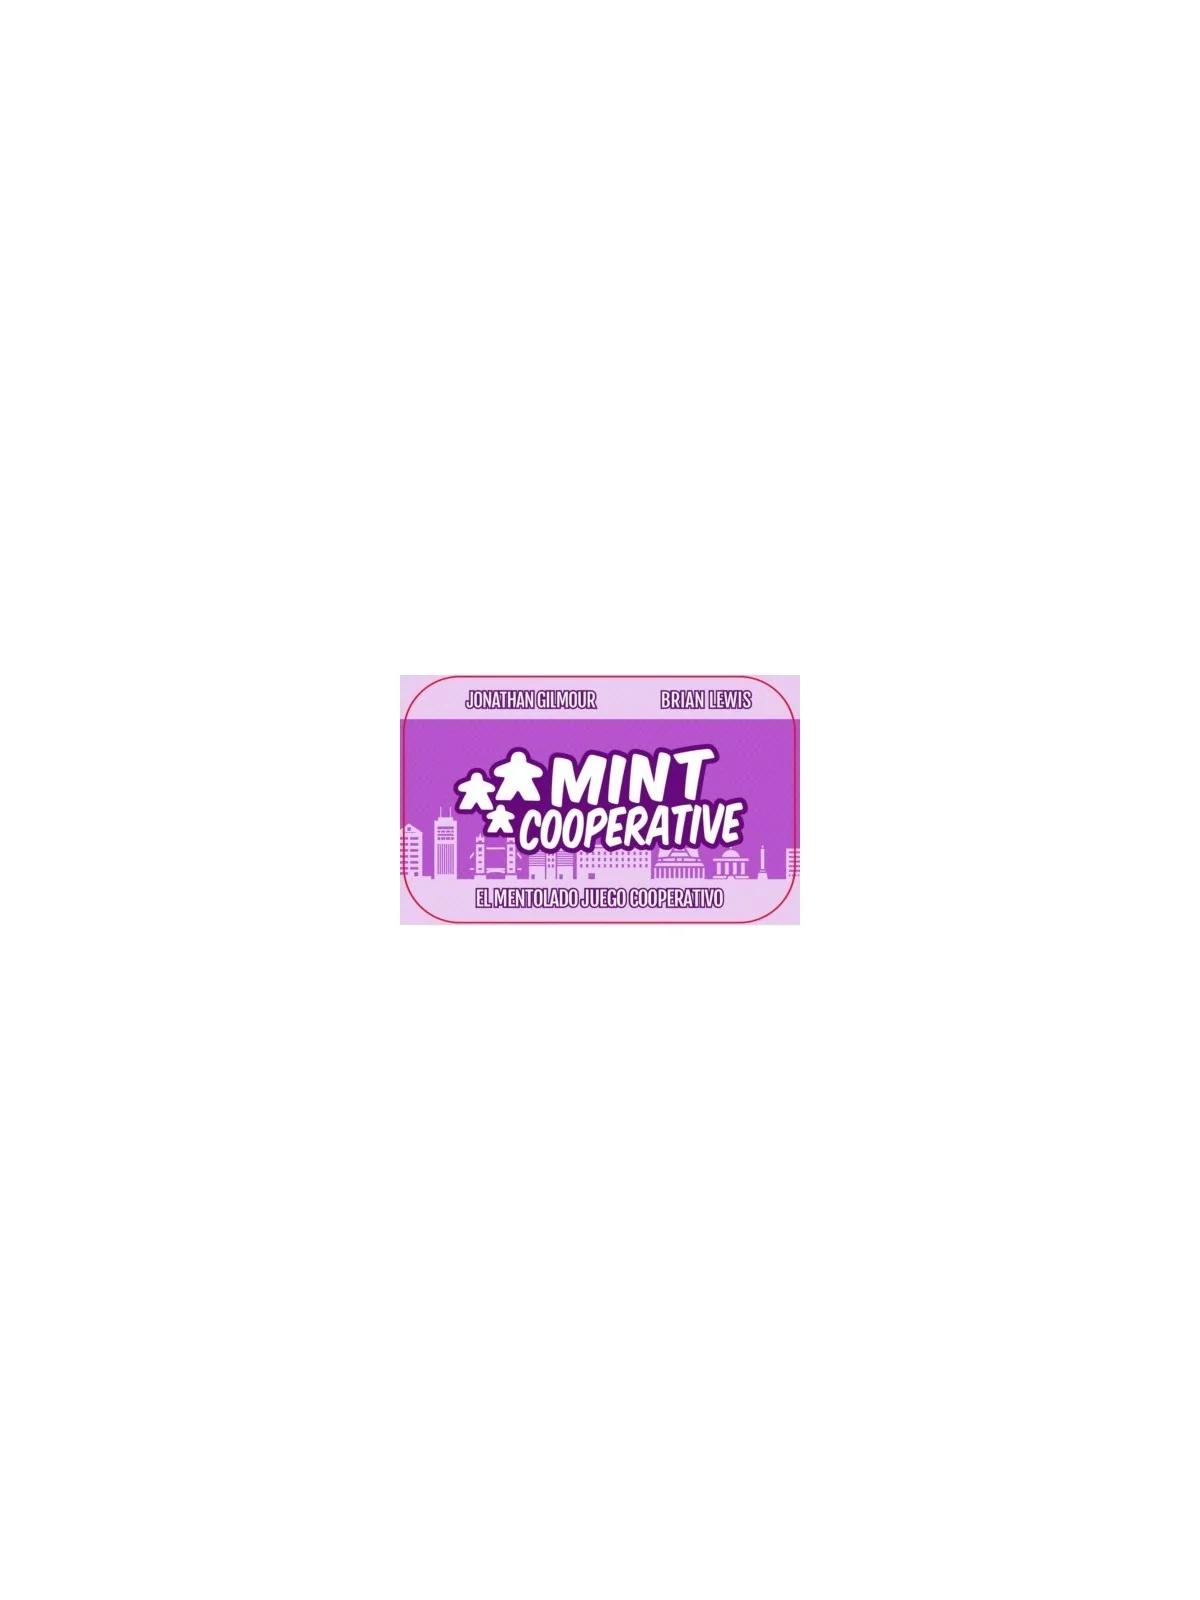 Comprar Mint Cooperative barato al mejor precio 13,50 € de Maldito Gam